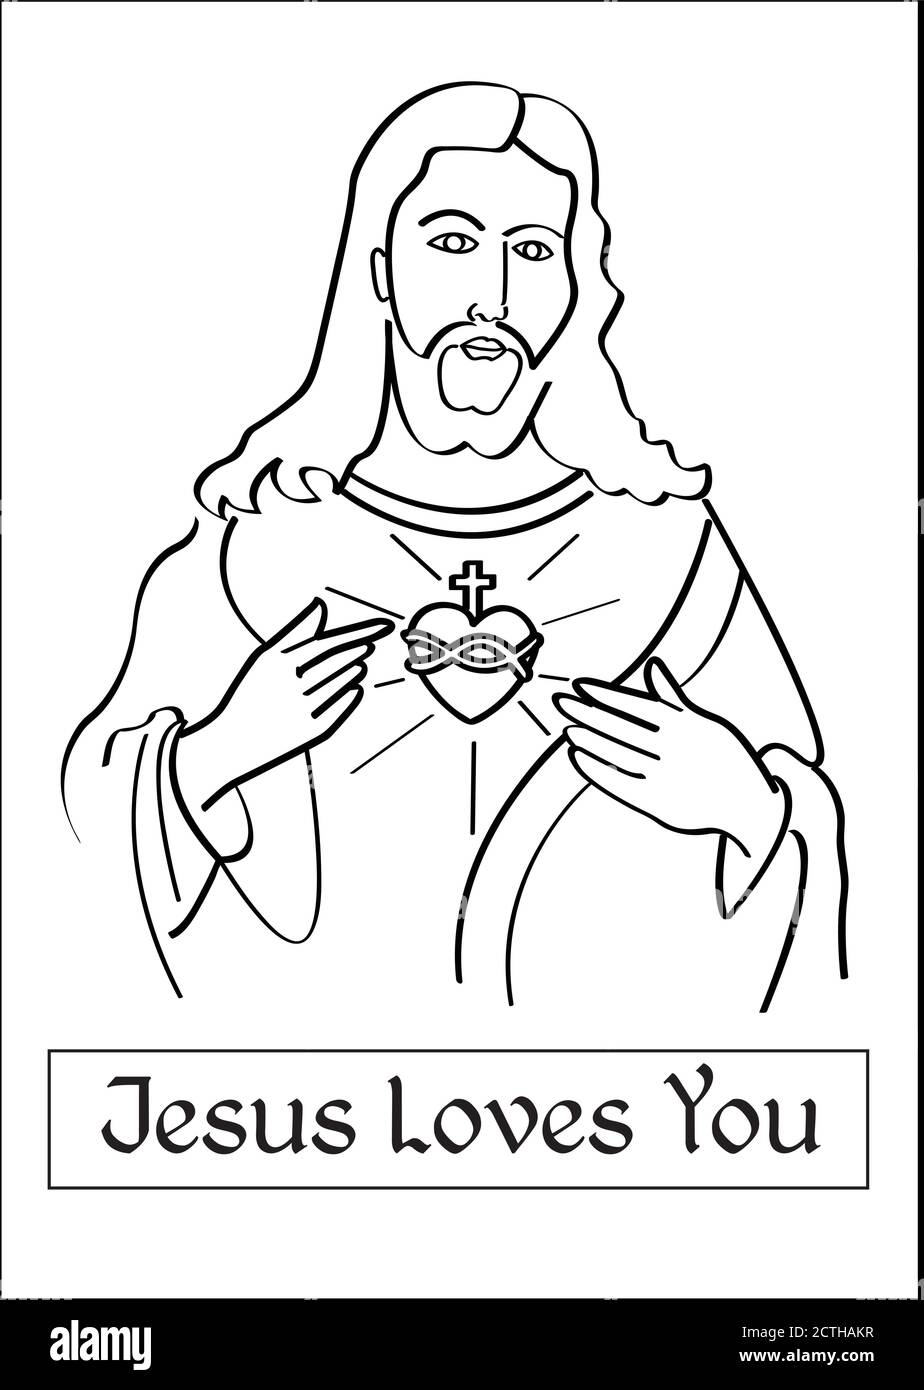 Gesù con gesù sacro cuore immagine con messaggi per le stampe t-shirt, libri, opere di dipinti per bambini, insegnanti di religione - Gesù vi ama Illustrazione Vettoriale